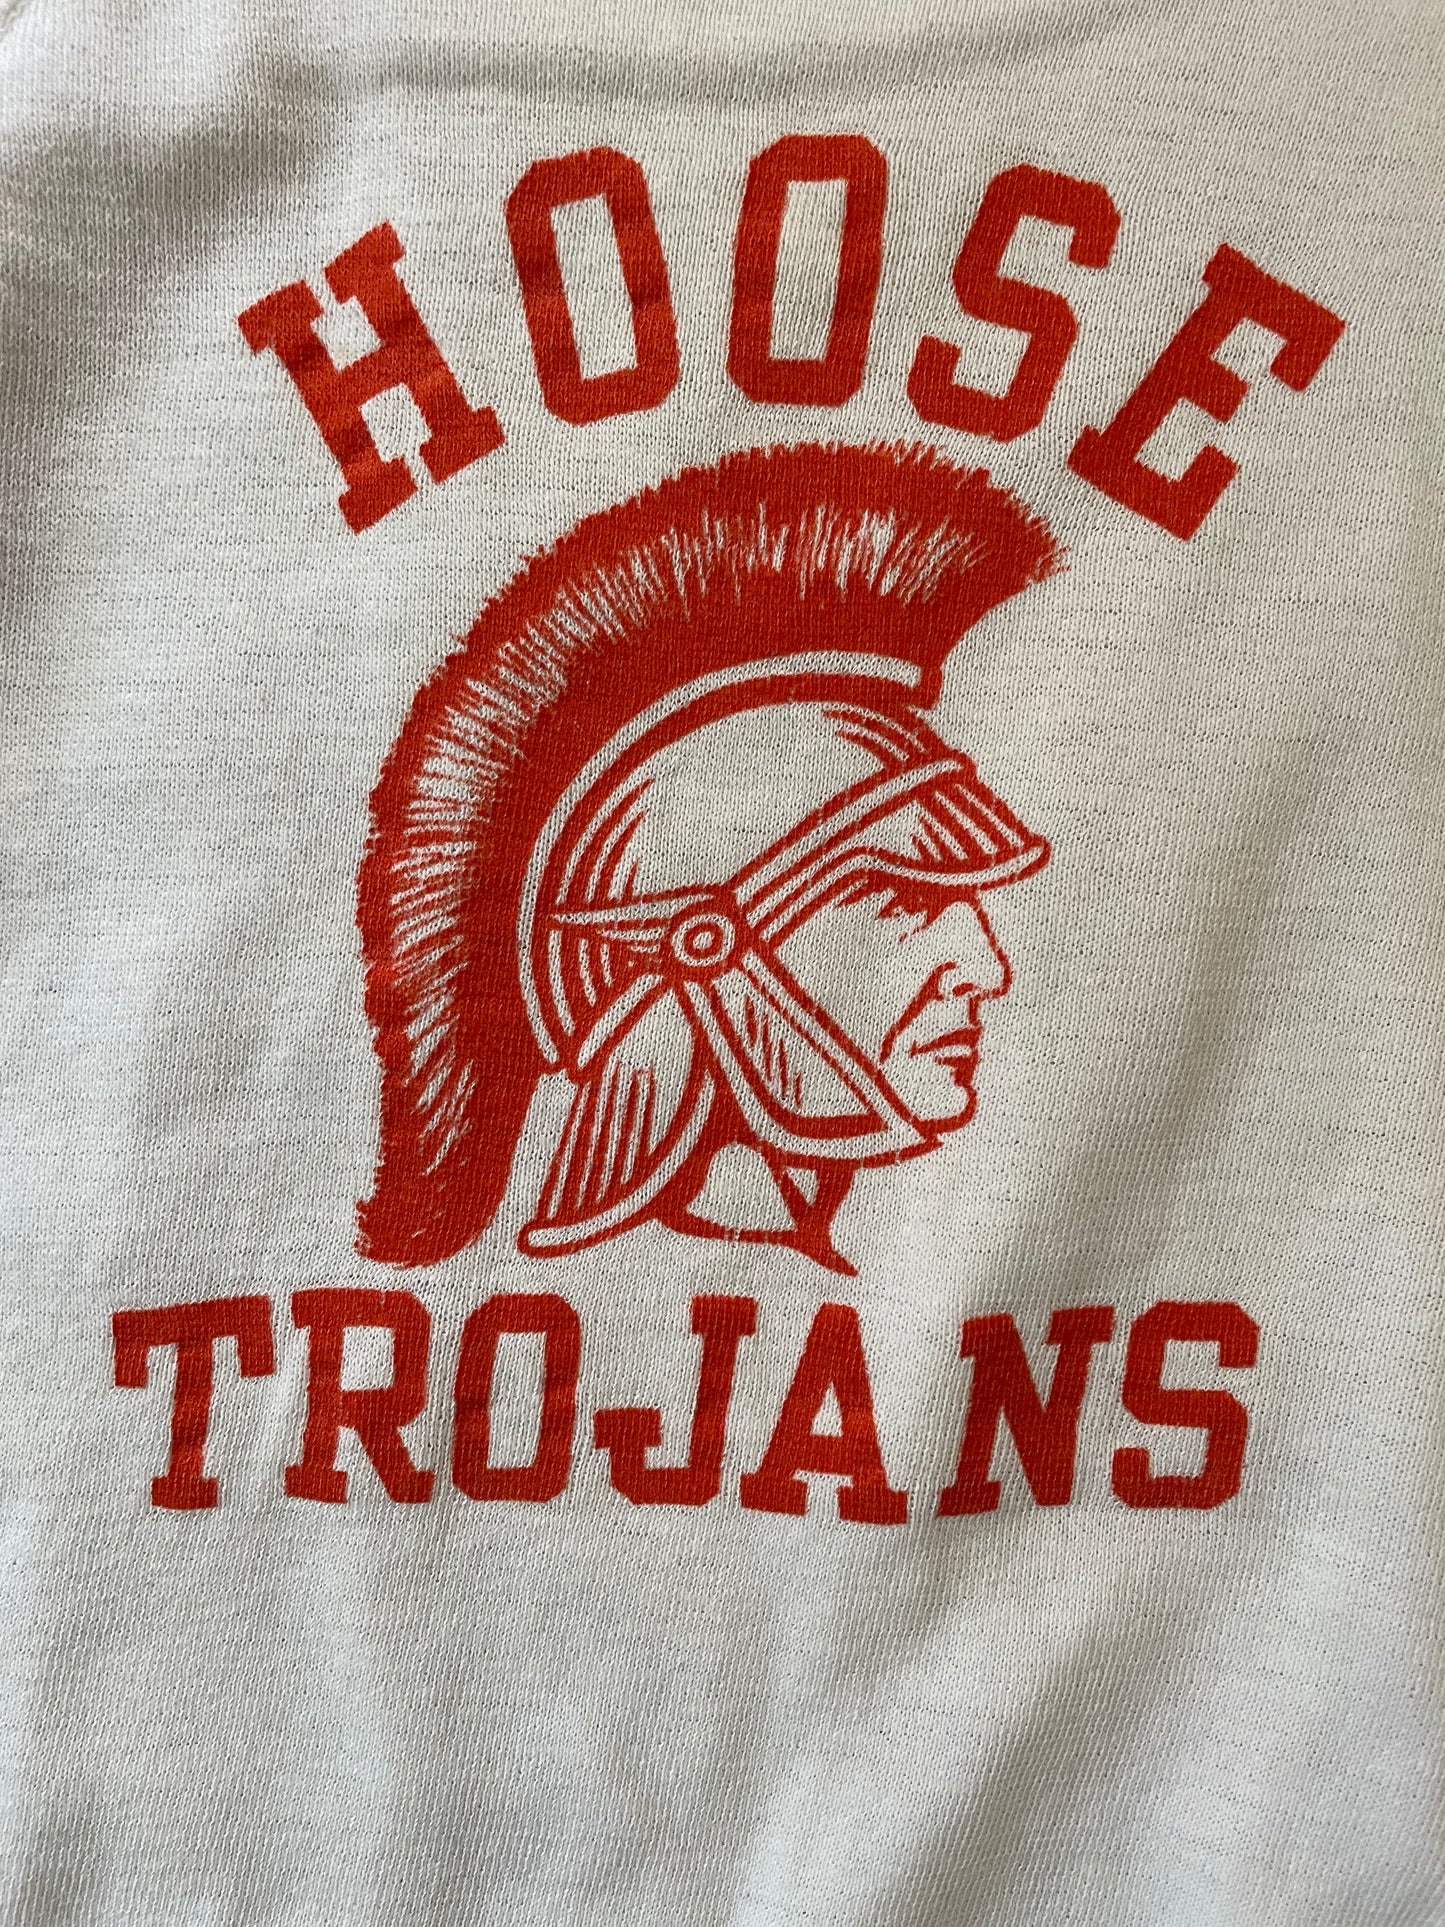 60s/70s Hoose Trojans Sweatshirt